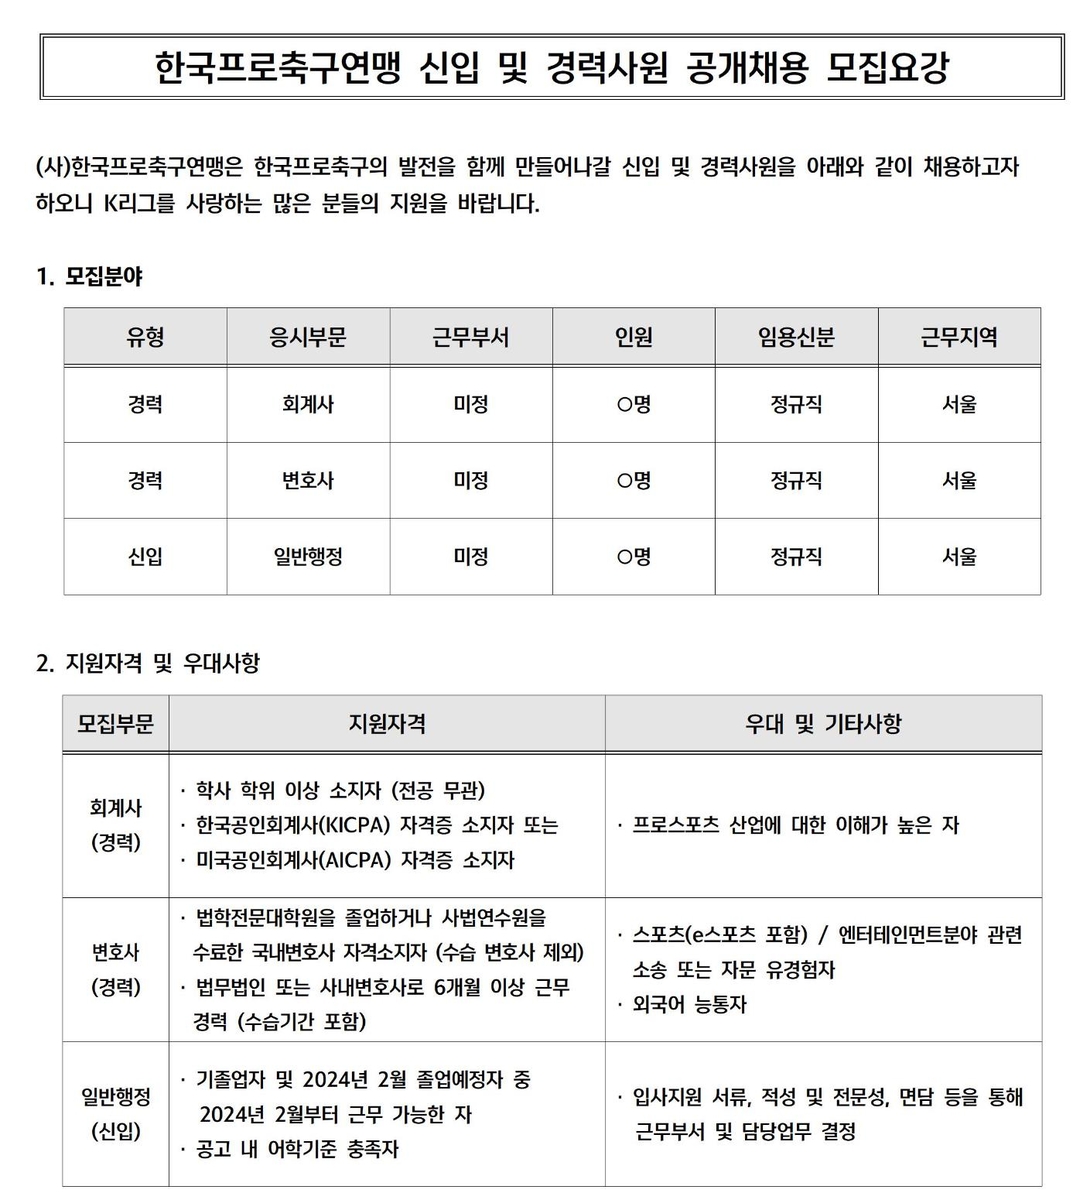 한국프로축구연맹, 정규직 신입 및 경력사원 공개 채용